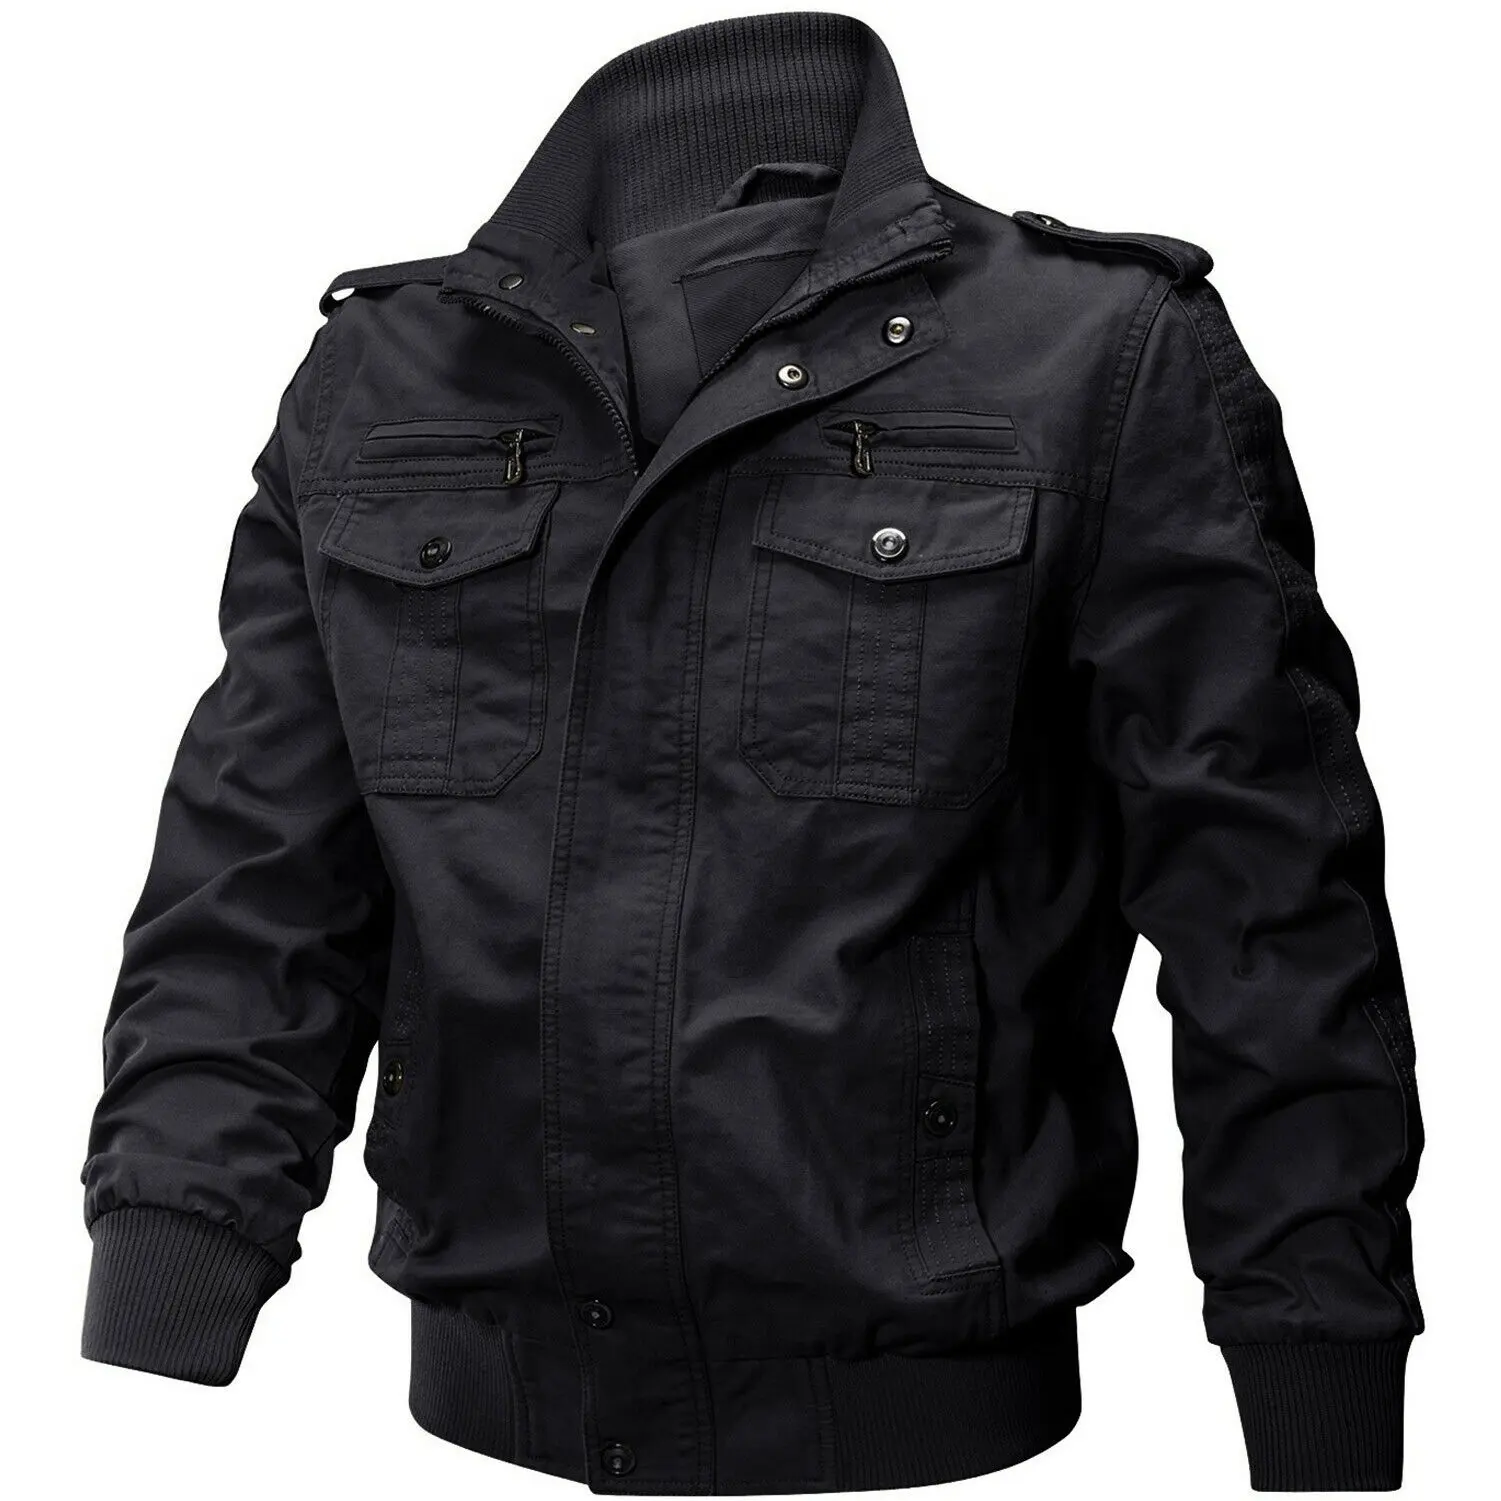 Tactical Jacket Men Winter Waterproof Windproof Hooded Outdoor jacket